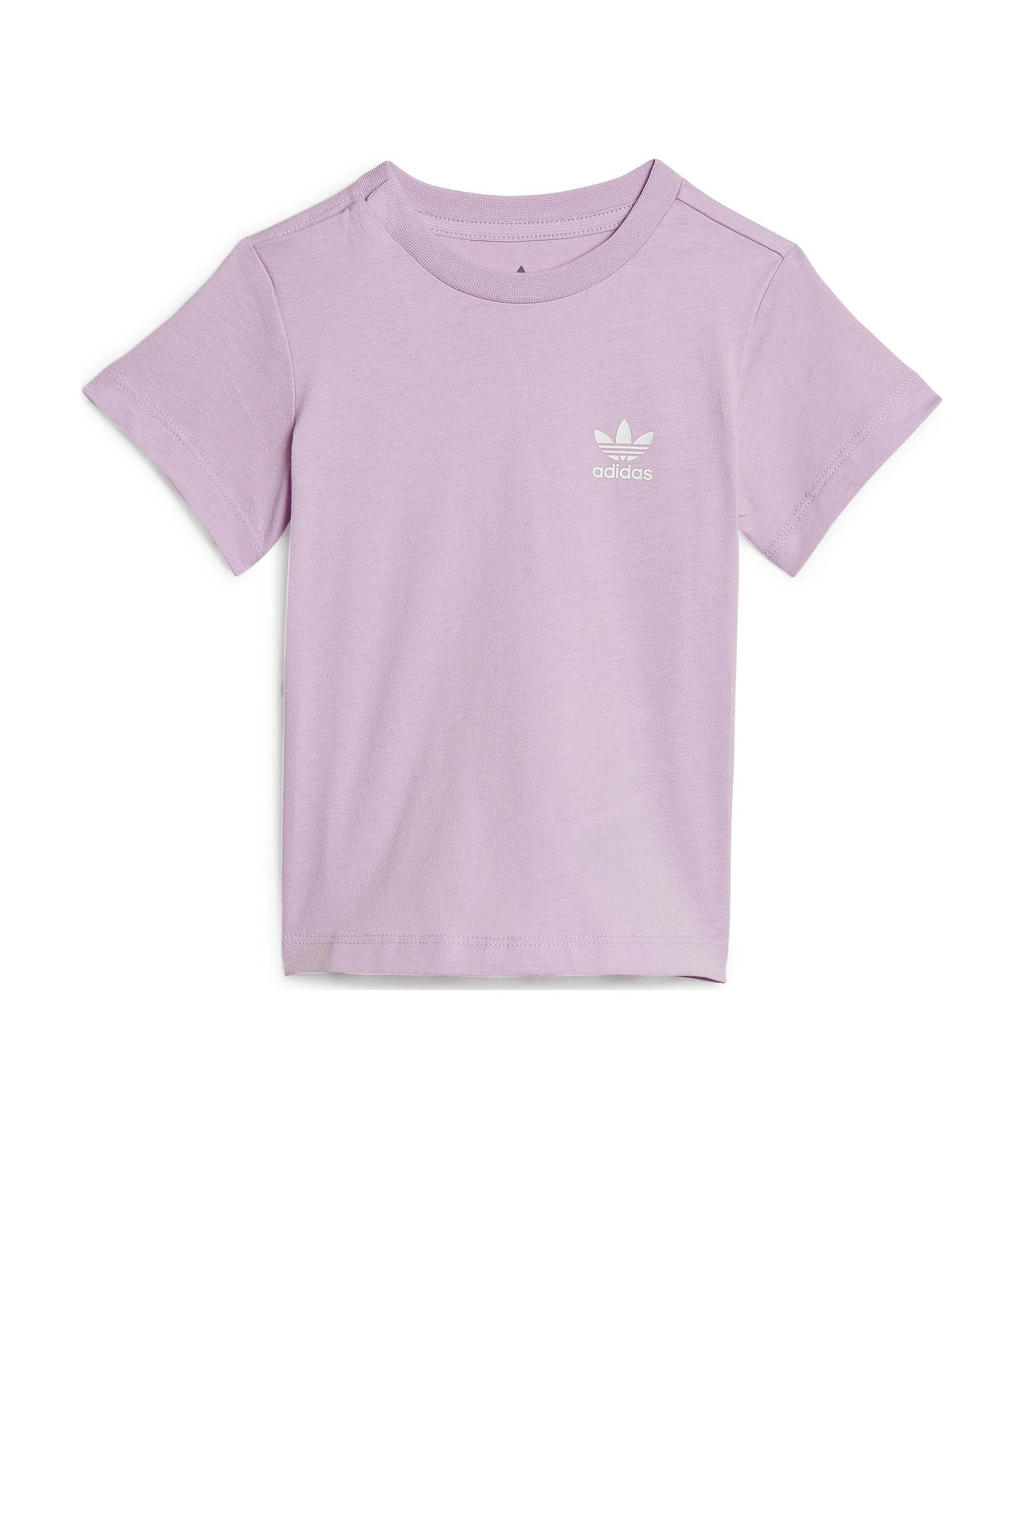 adidas Originals T-shirt roze